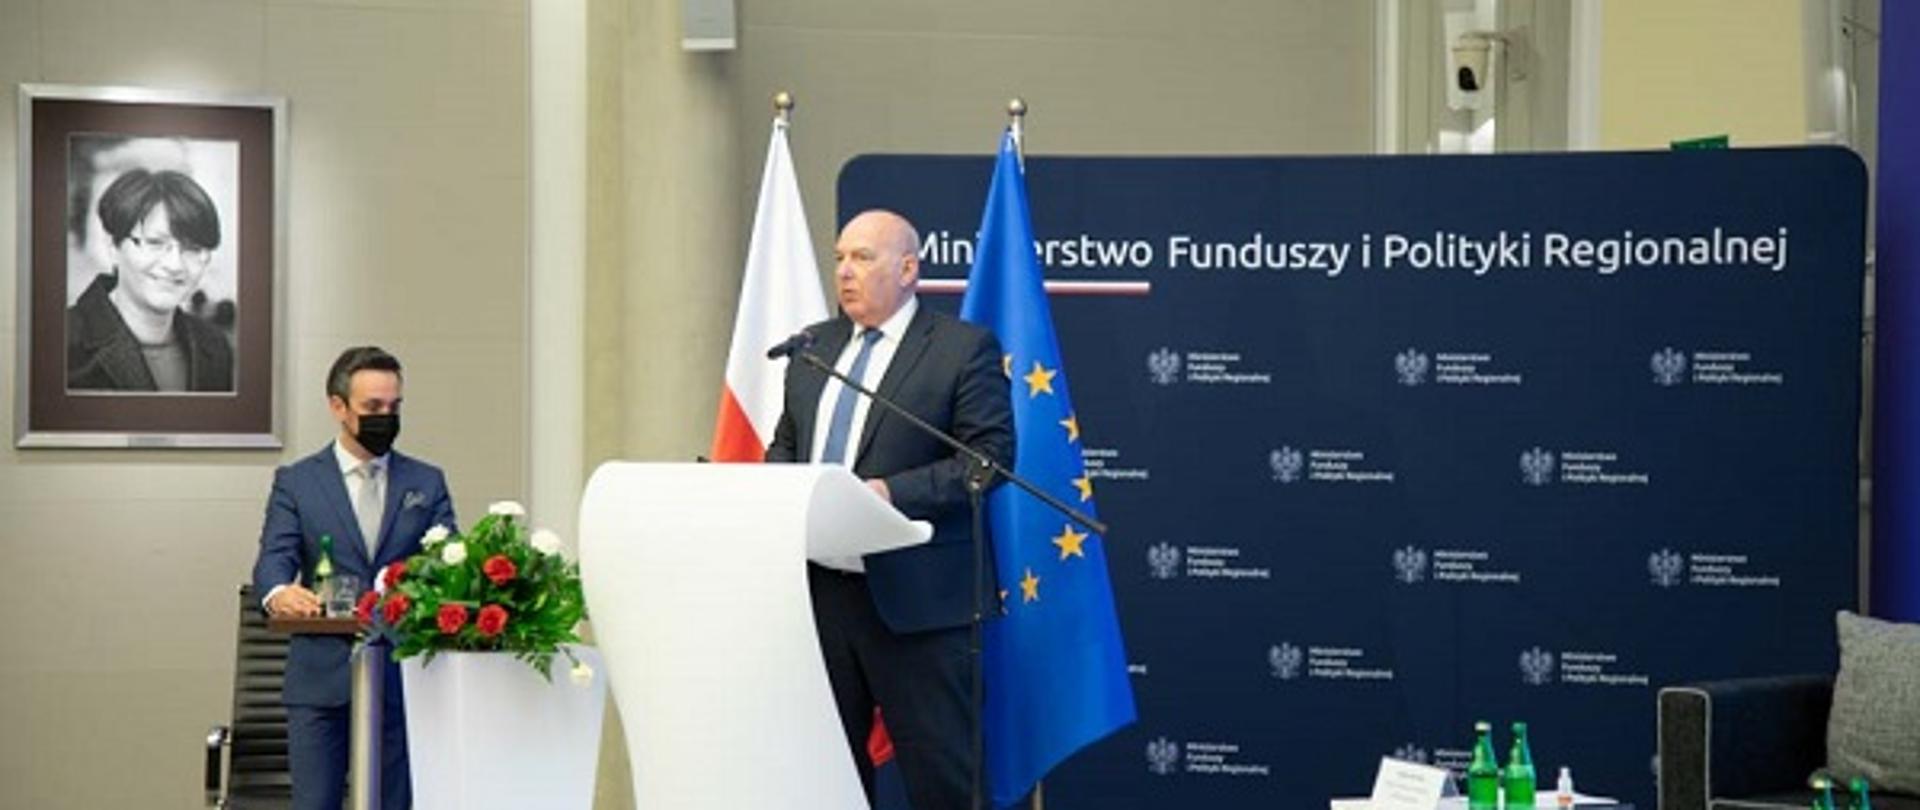 Minister Tadeusz Kościński przemawia na scenie. W tle ścianka z logo Ministerstwa Funduszy i Polityki Regionalnej